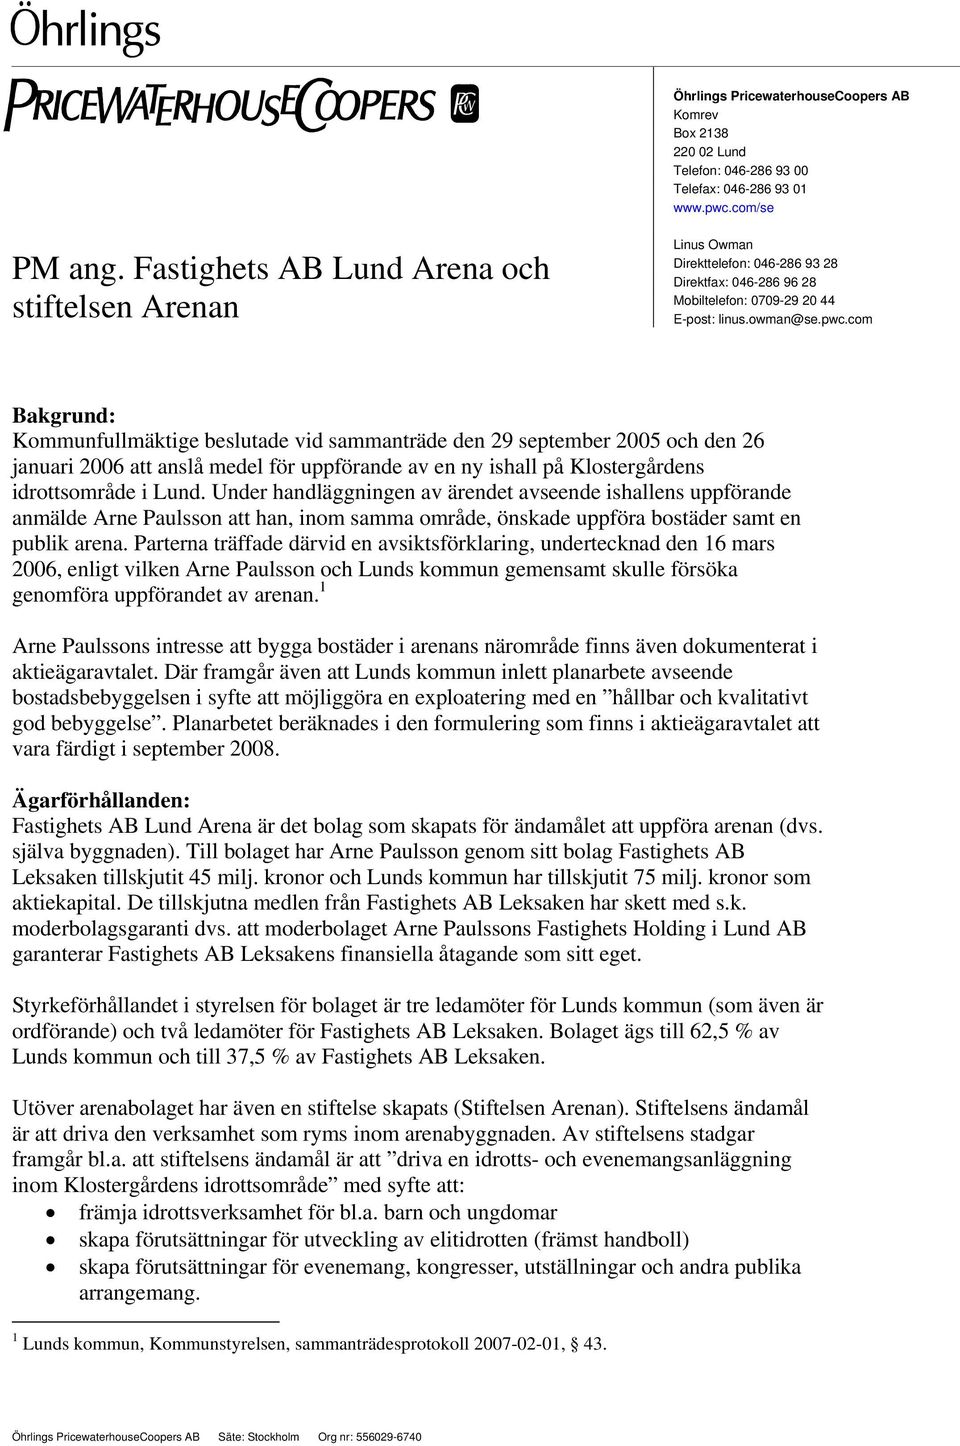 com Bakgrund: Kommunfullmäktige beslutade vid sammanträde den 29 september 2005 och den 26 januari 2006 att anslå medel för uppförande av en ny ishall på Klostergårdens idrottsområde i Lund.